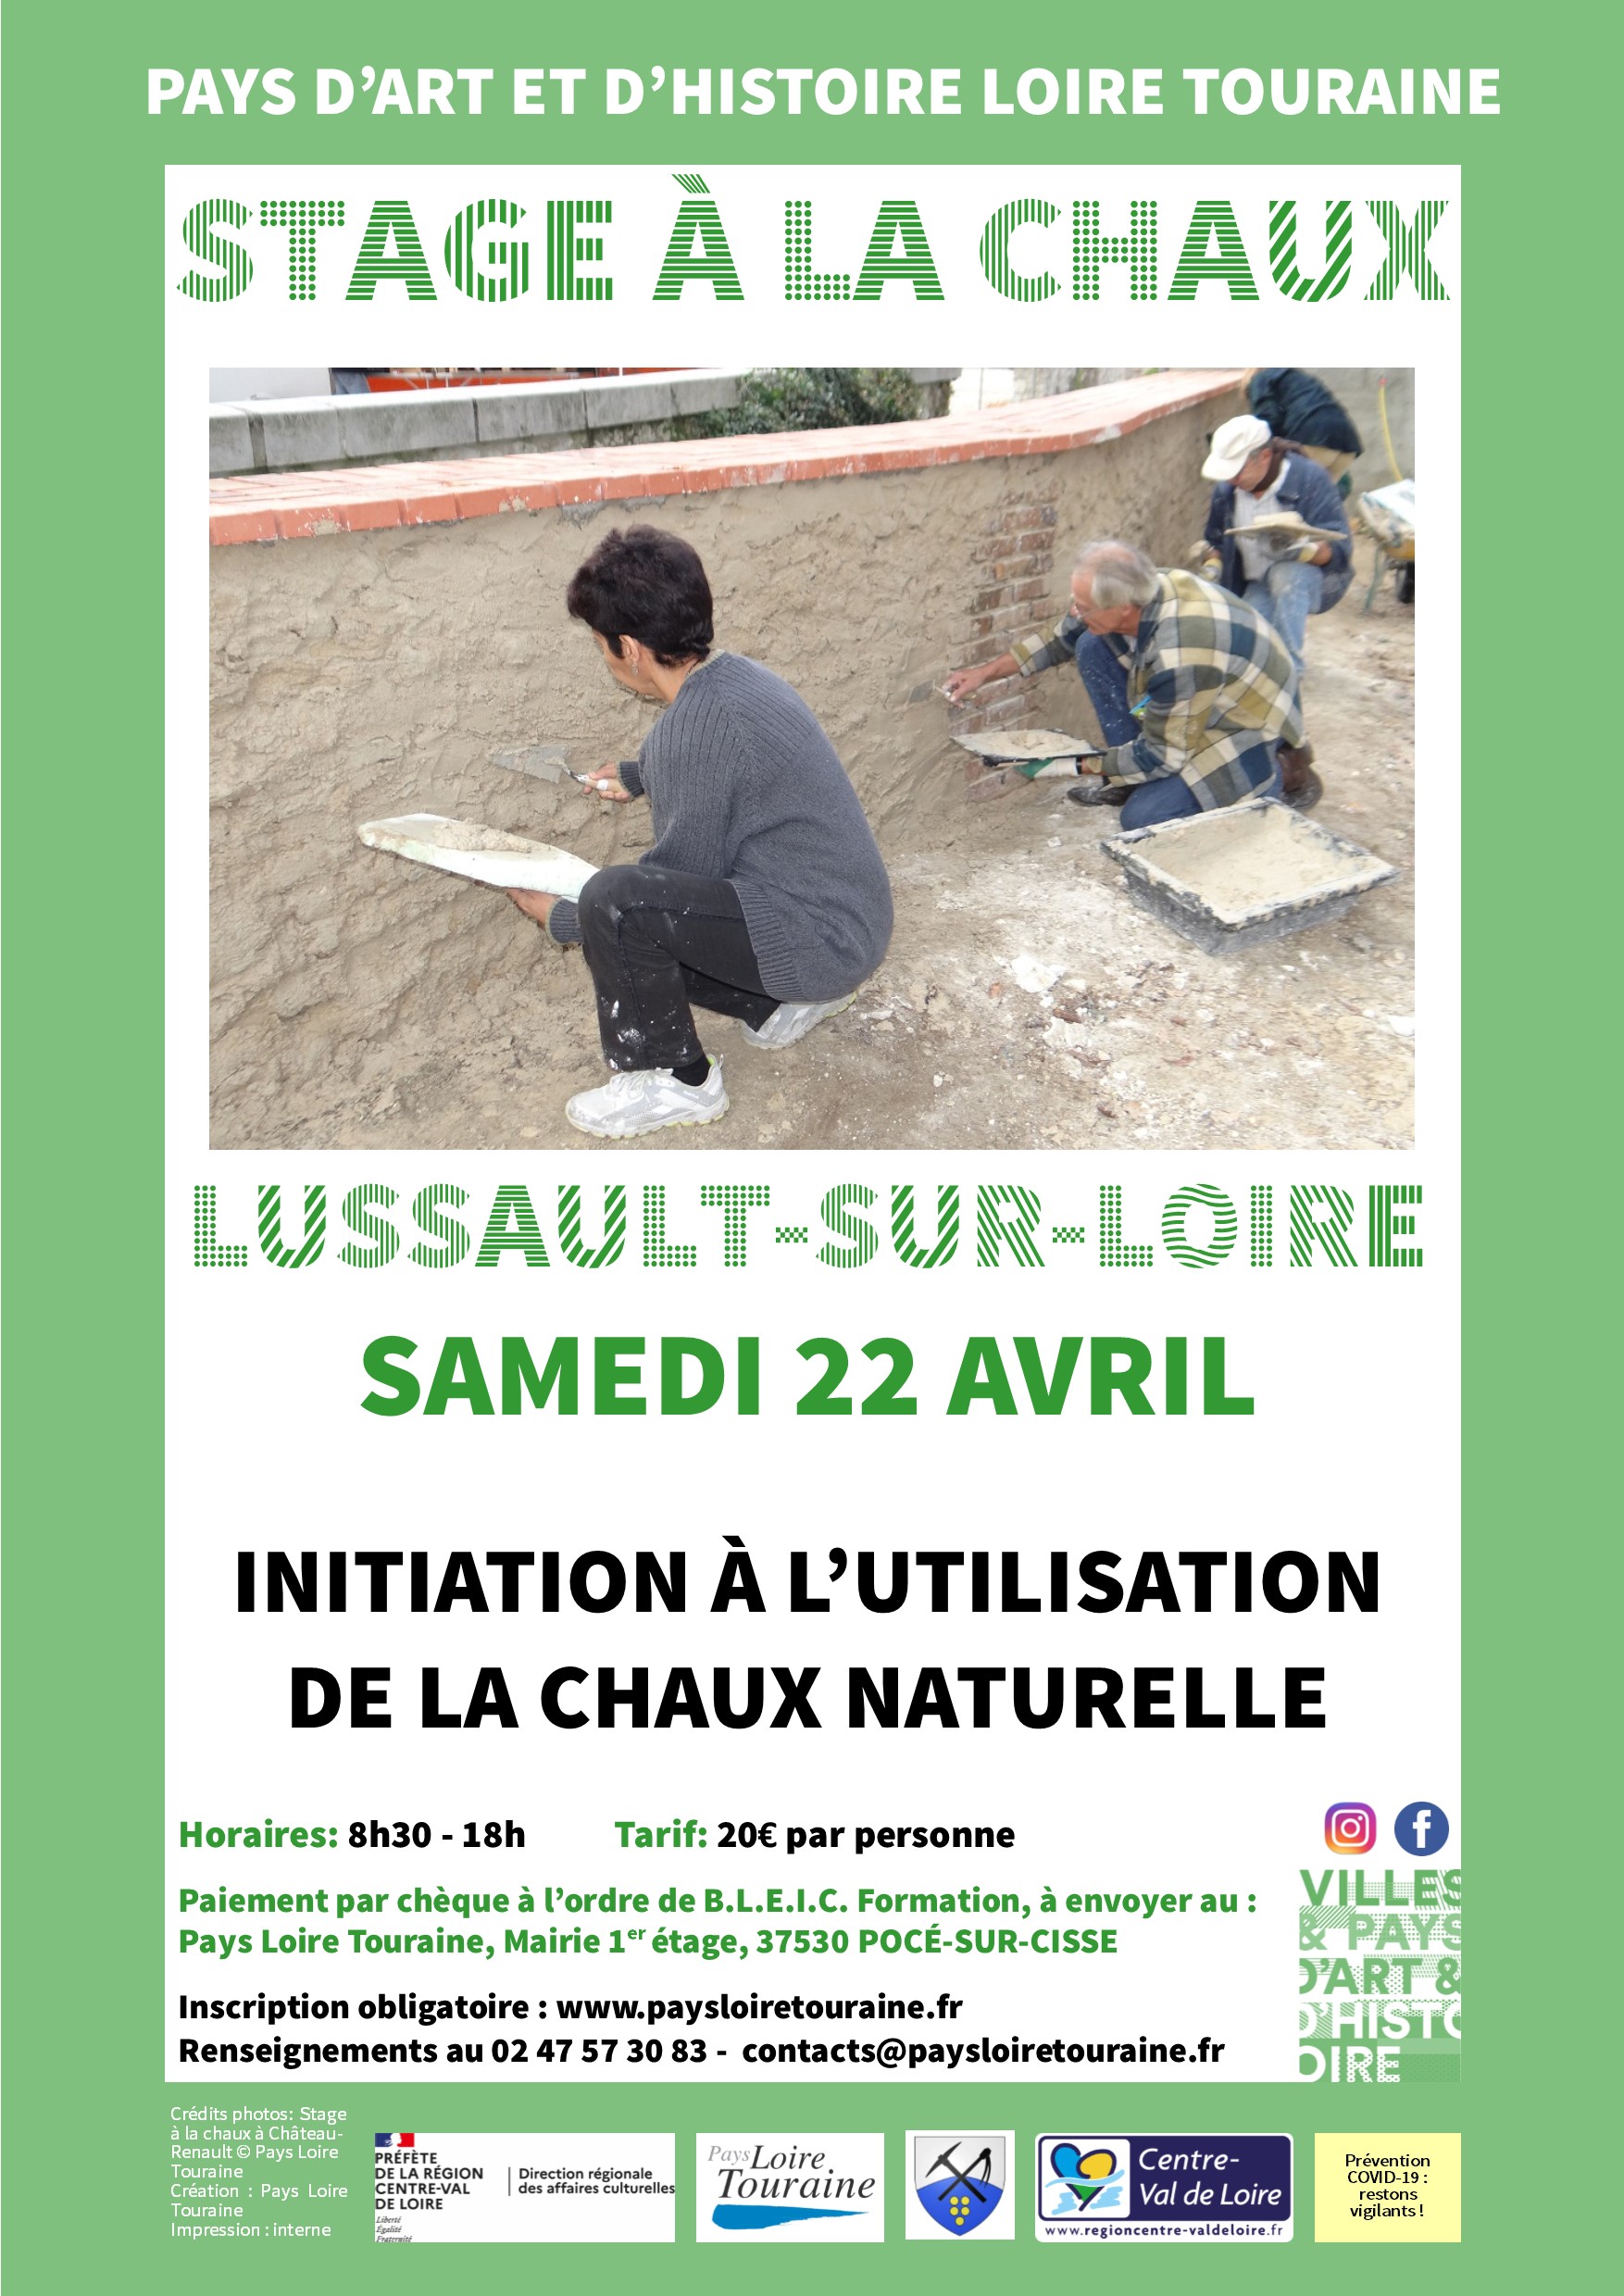 Initiation à l’utilisation de la chaux naturelle, à Lussault sur Loire©